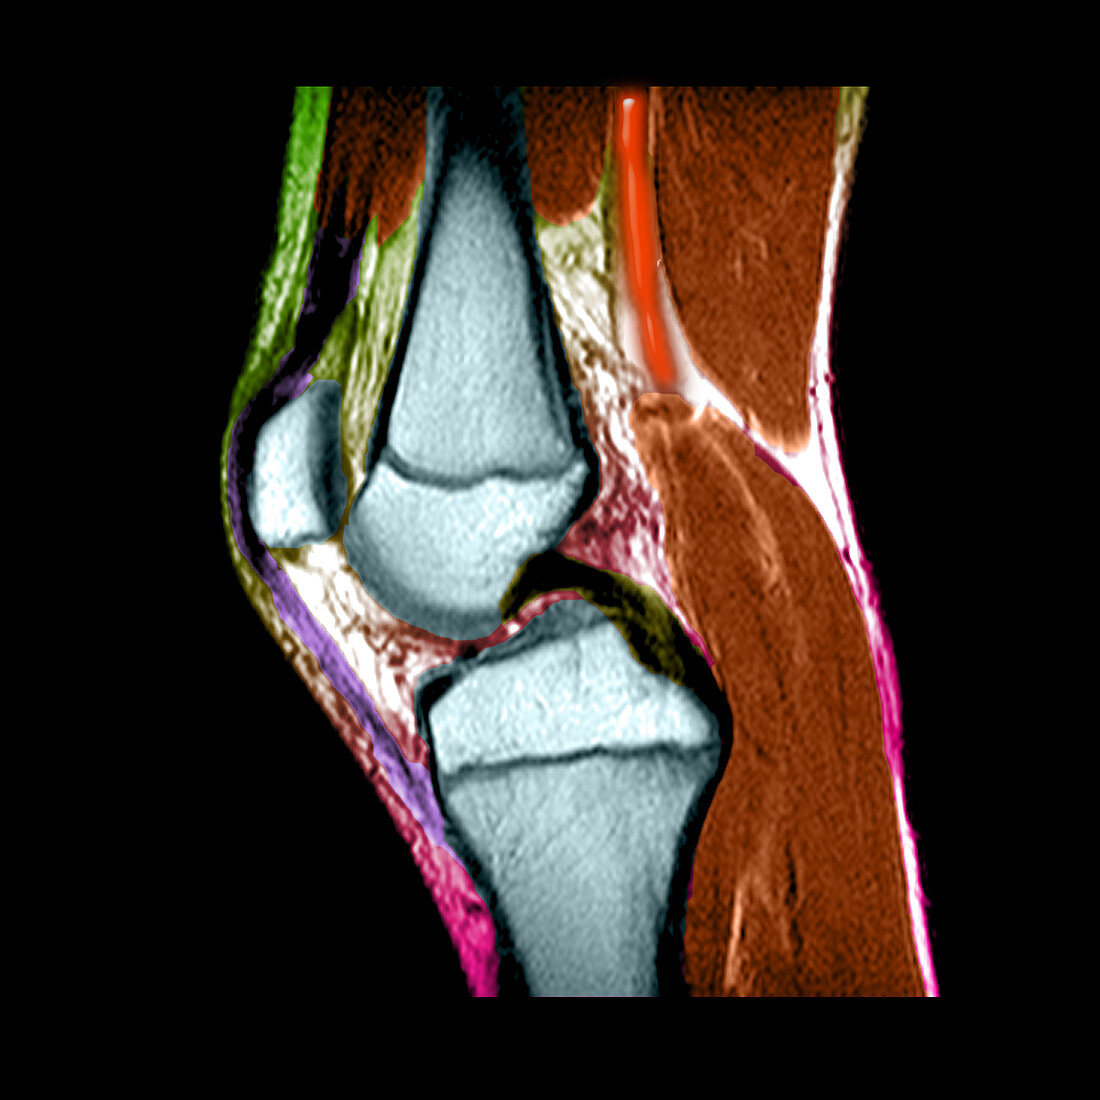 MRI of childs knee